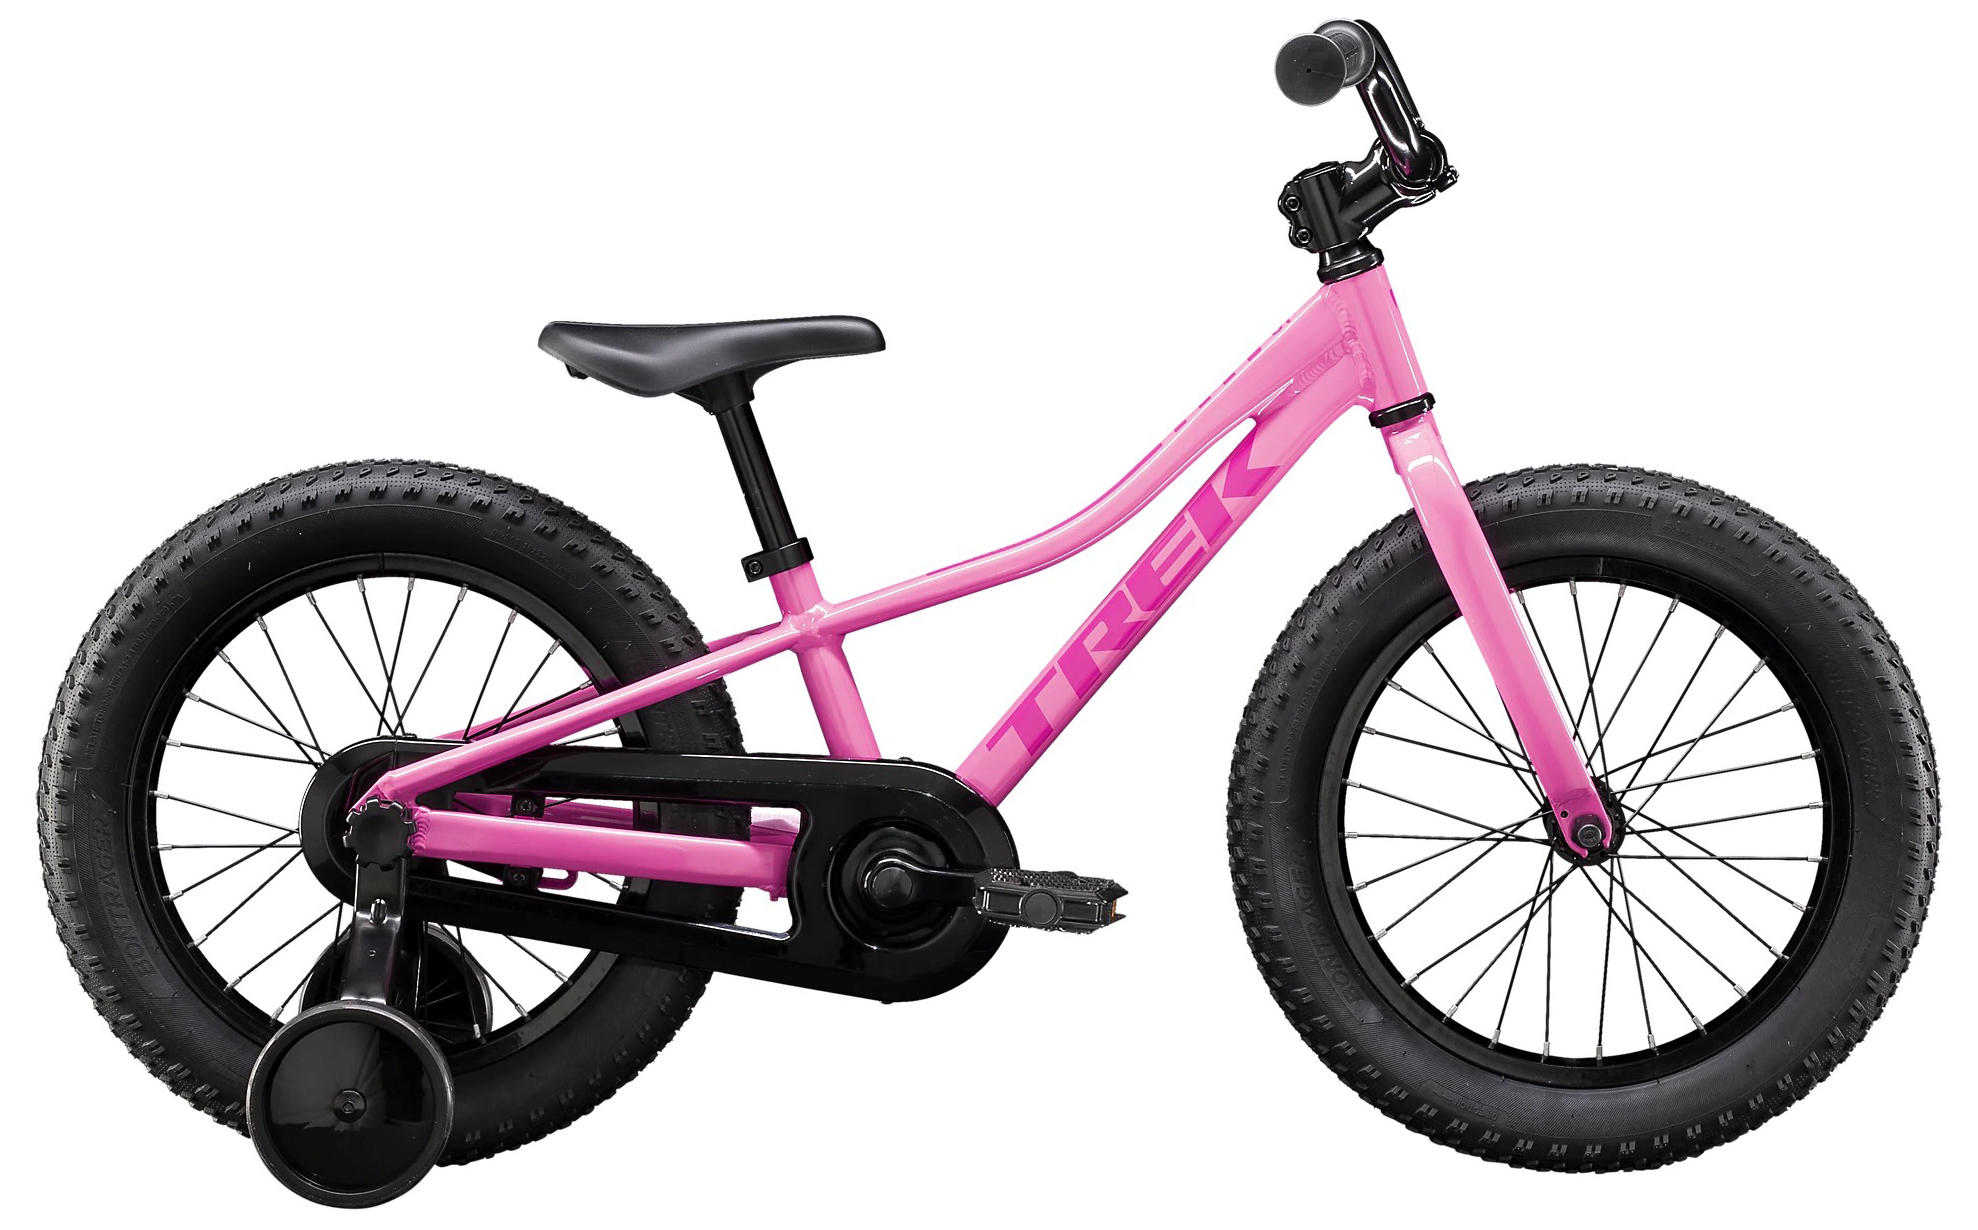  Отзывы о Детском велосипеде Trek Precaliber 16 Girls 2020